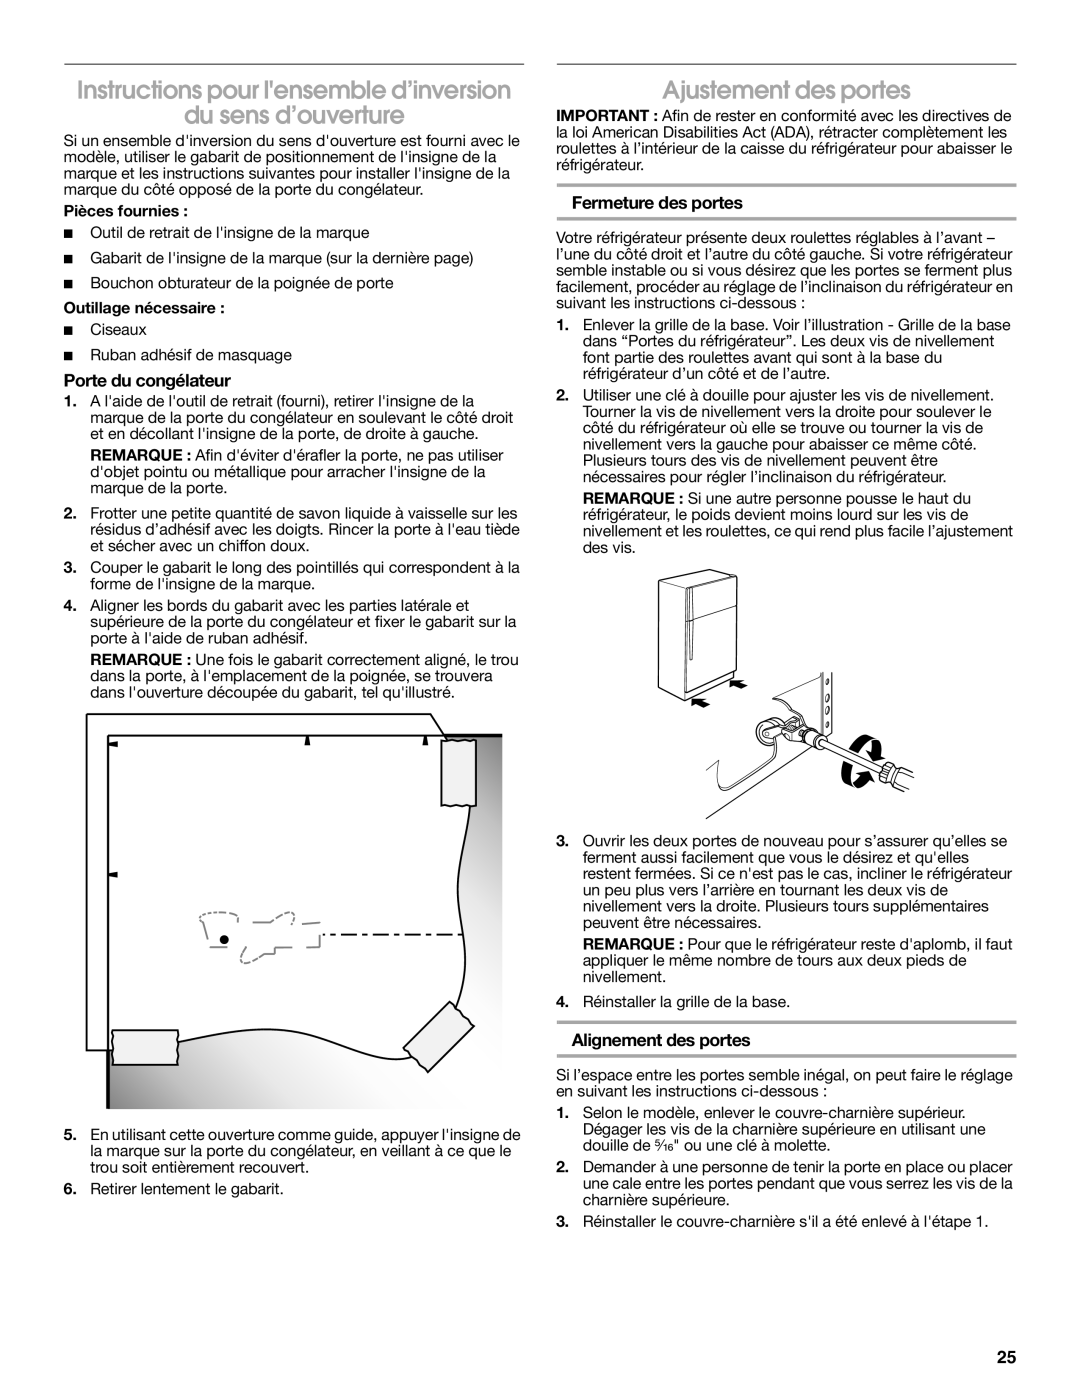 Whirlpool W10726840A Instructions pour lensemble d’inversion, du sens d’ouverture, Ajustement des portes, Pièces fournies 